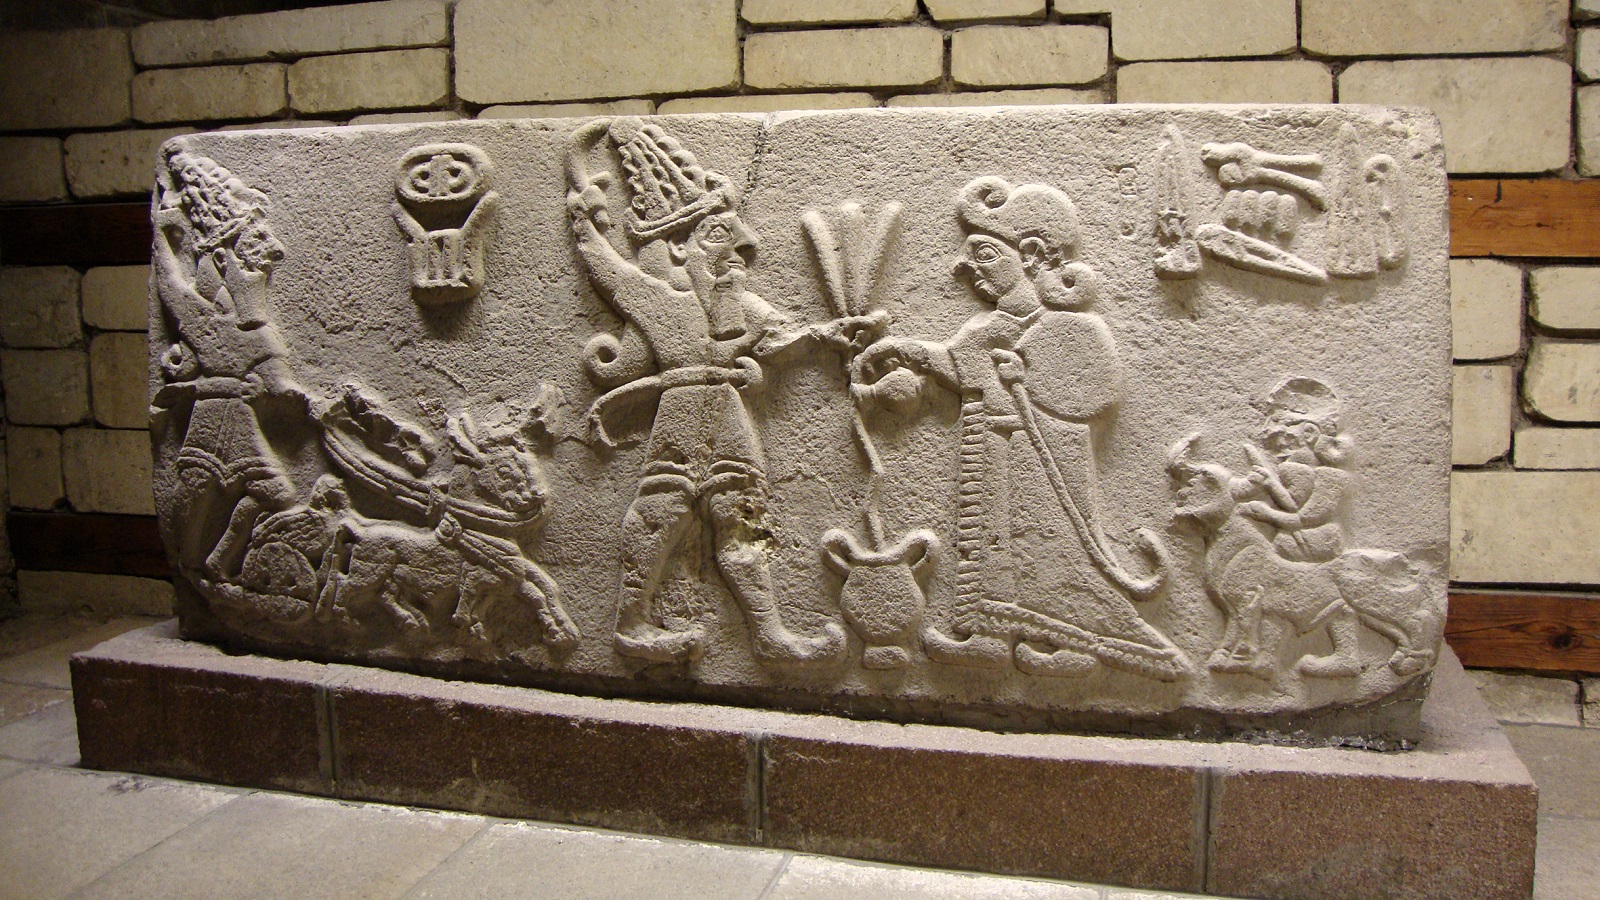  لوح من تل ارسلان تيبيه، متحف الحضارات الأناضولية في أنقرة.